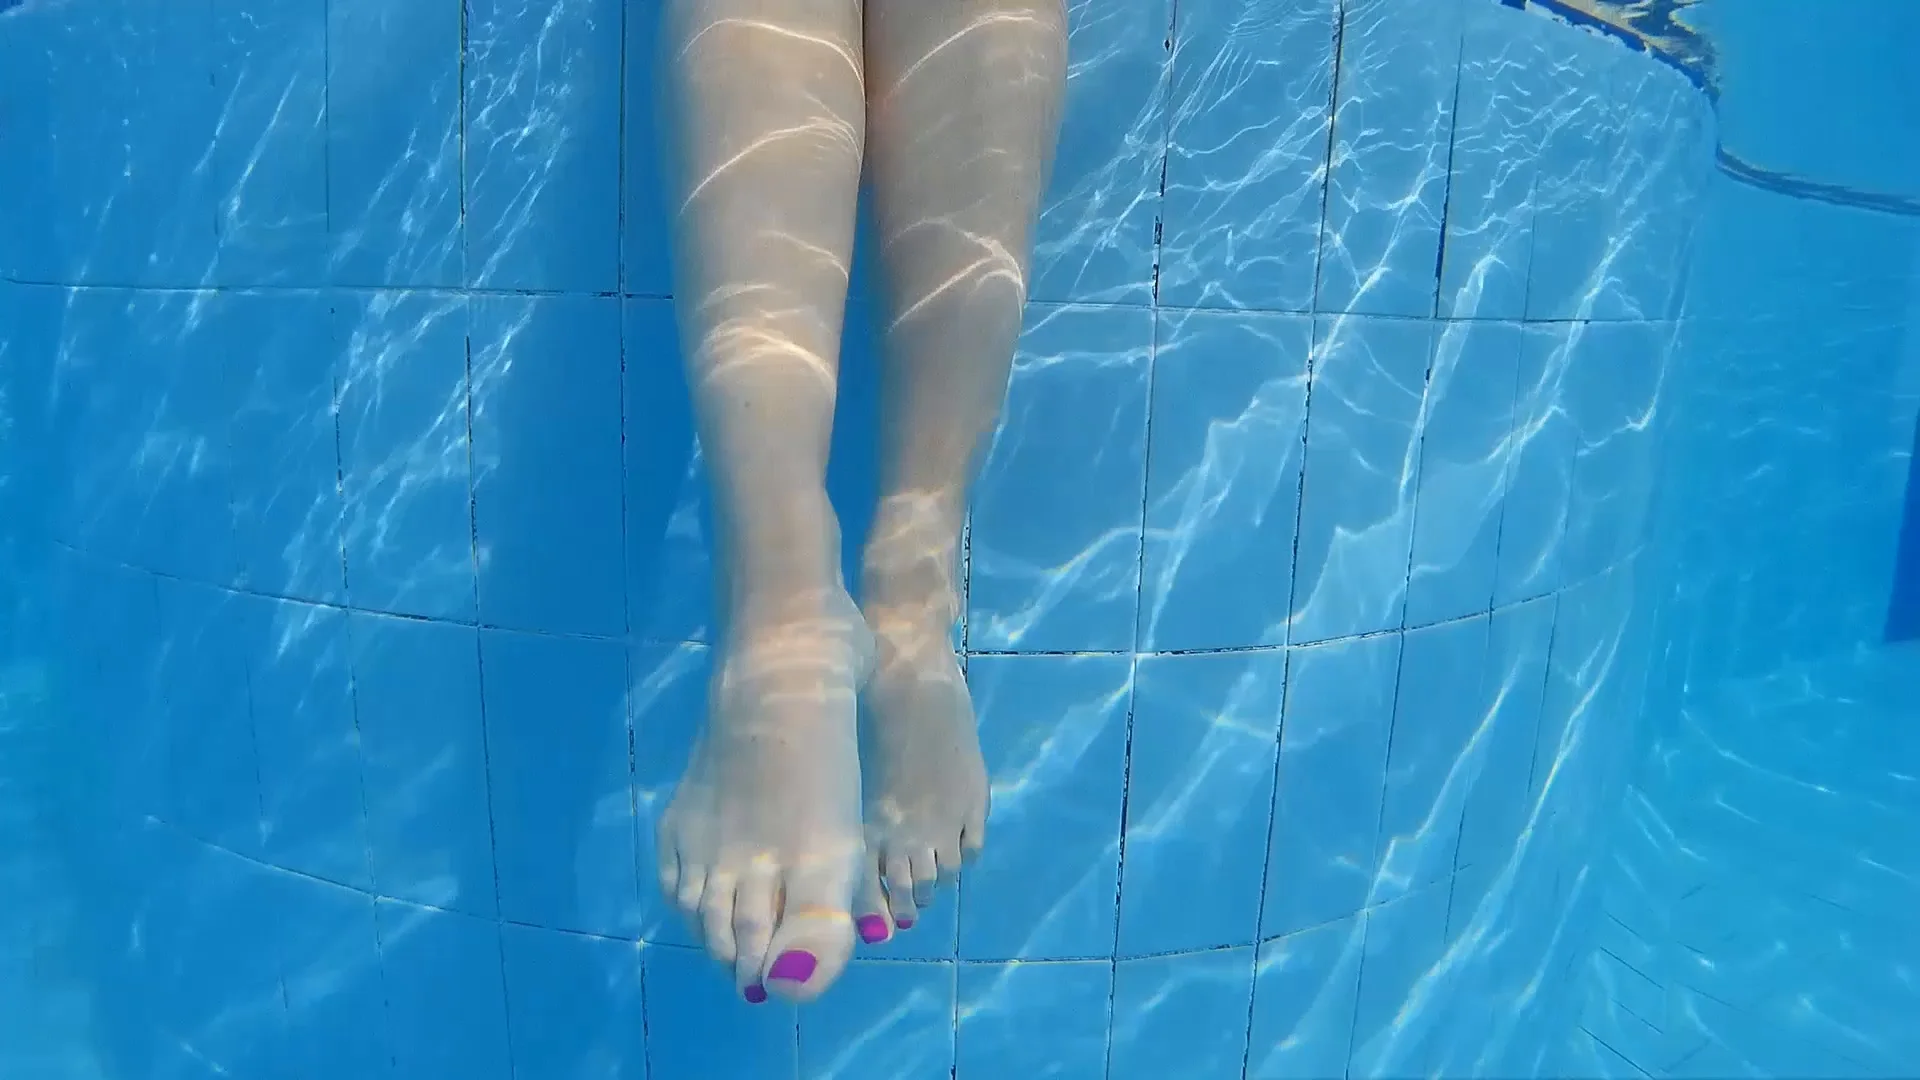 Feet under water